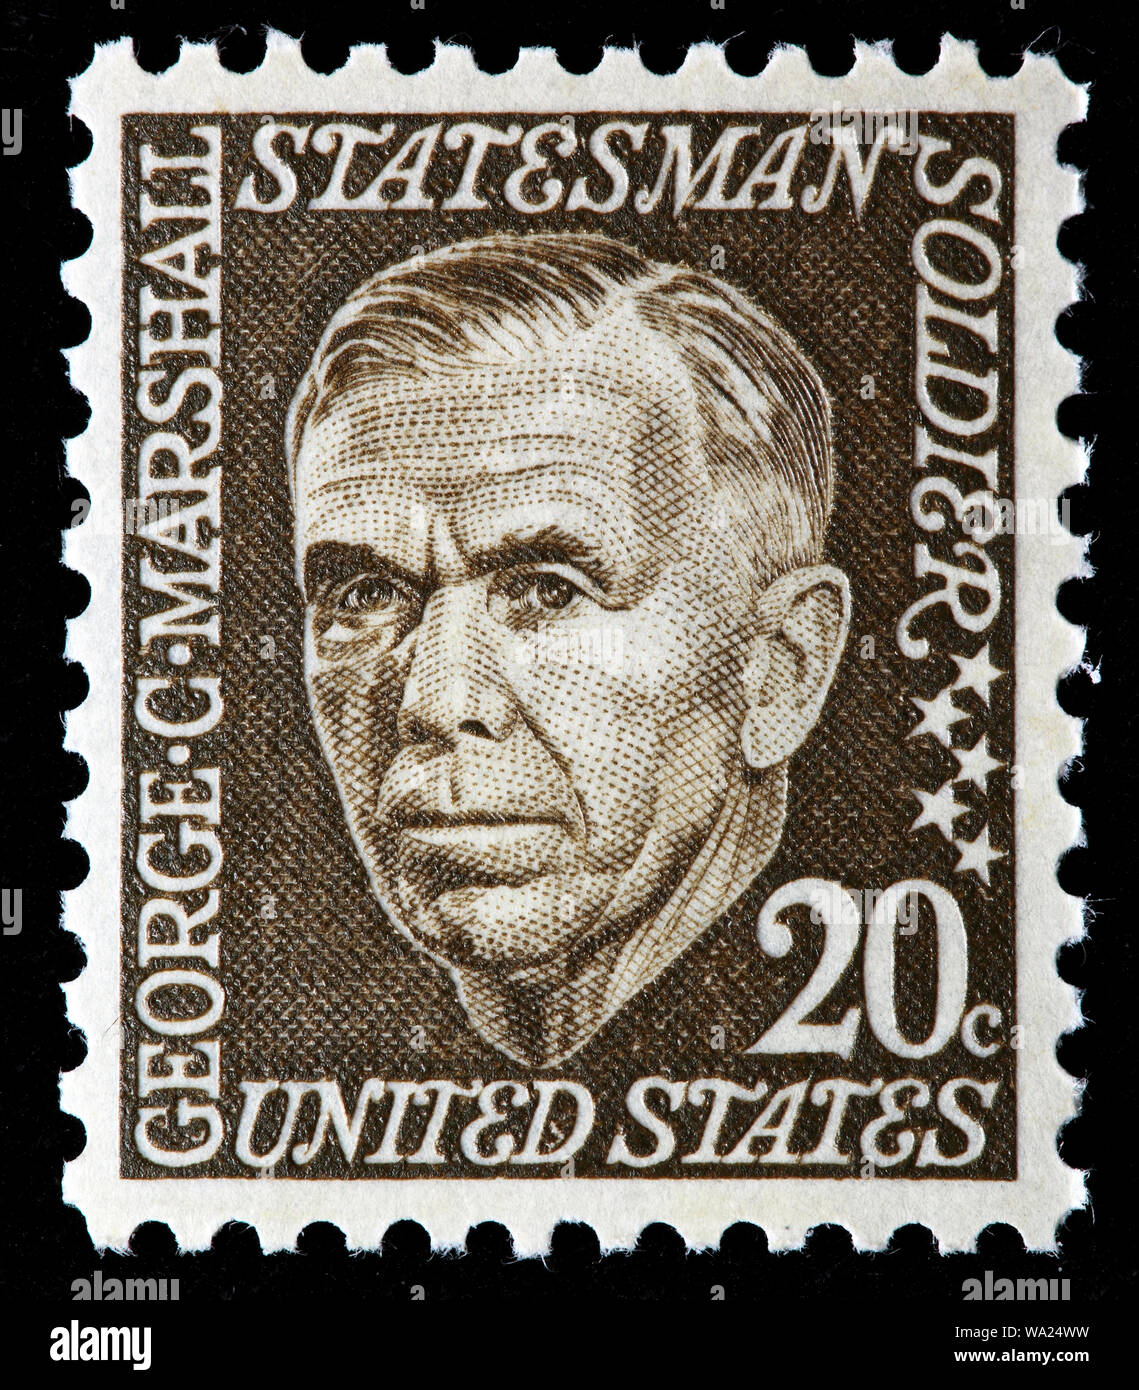 George Marshall (1880-1959), soldat américain, homme d'État, secrétaire d'État américain, timbre-poste, USA, 1967 Banque D'Images